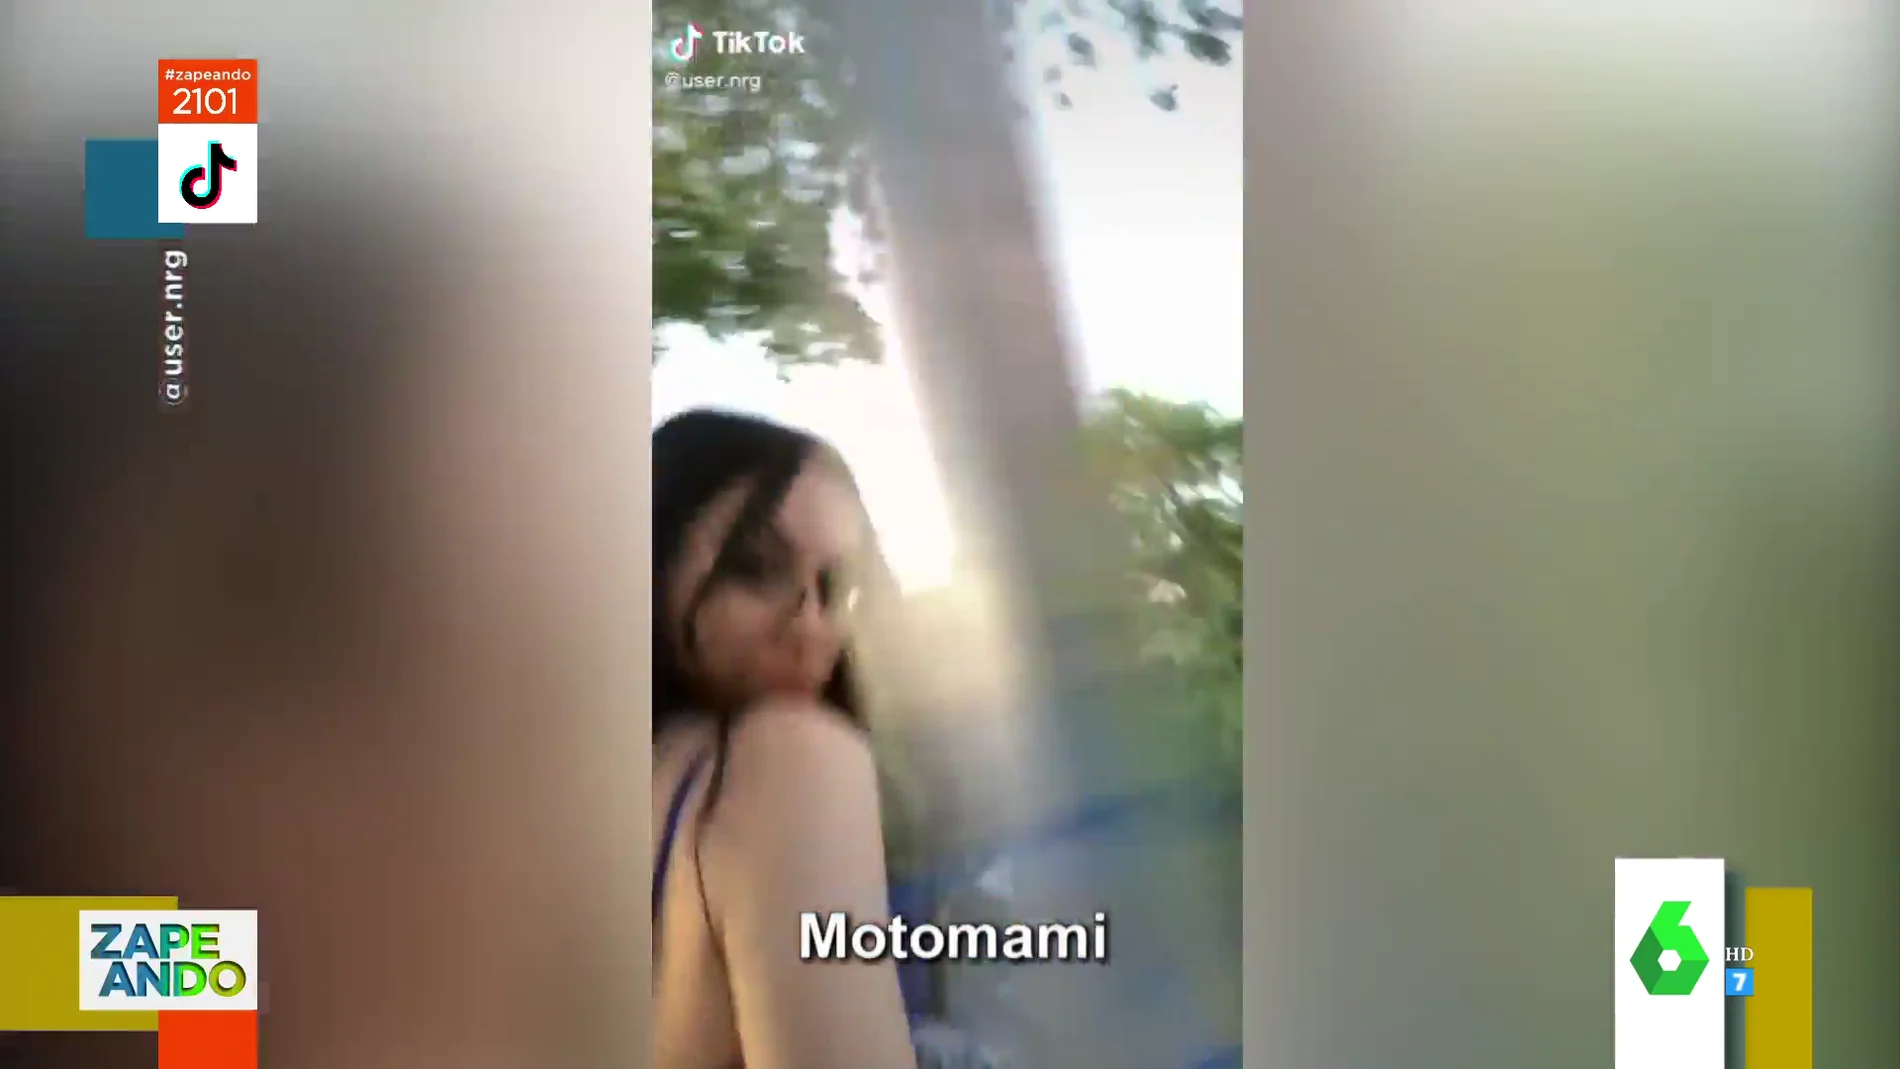 La caída viral de una chica al chocar contra una farola mientras canta Motomami de Rosalía 